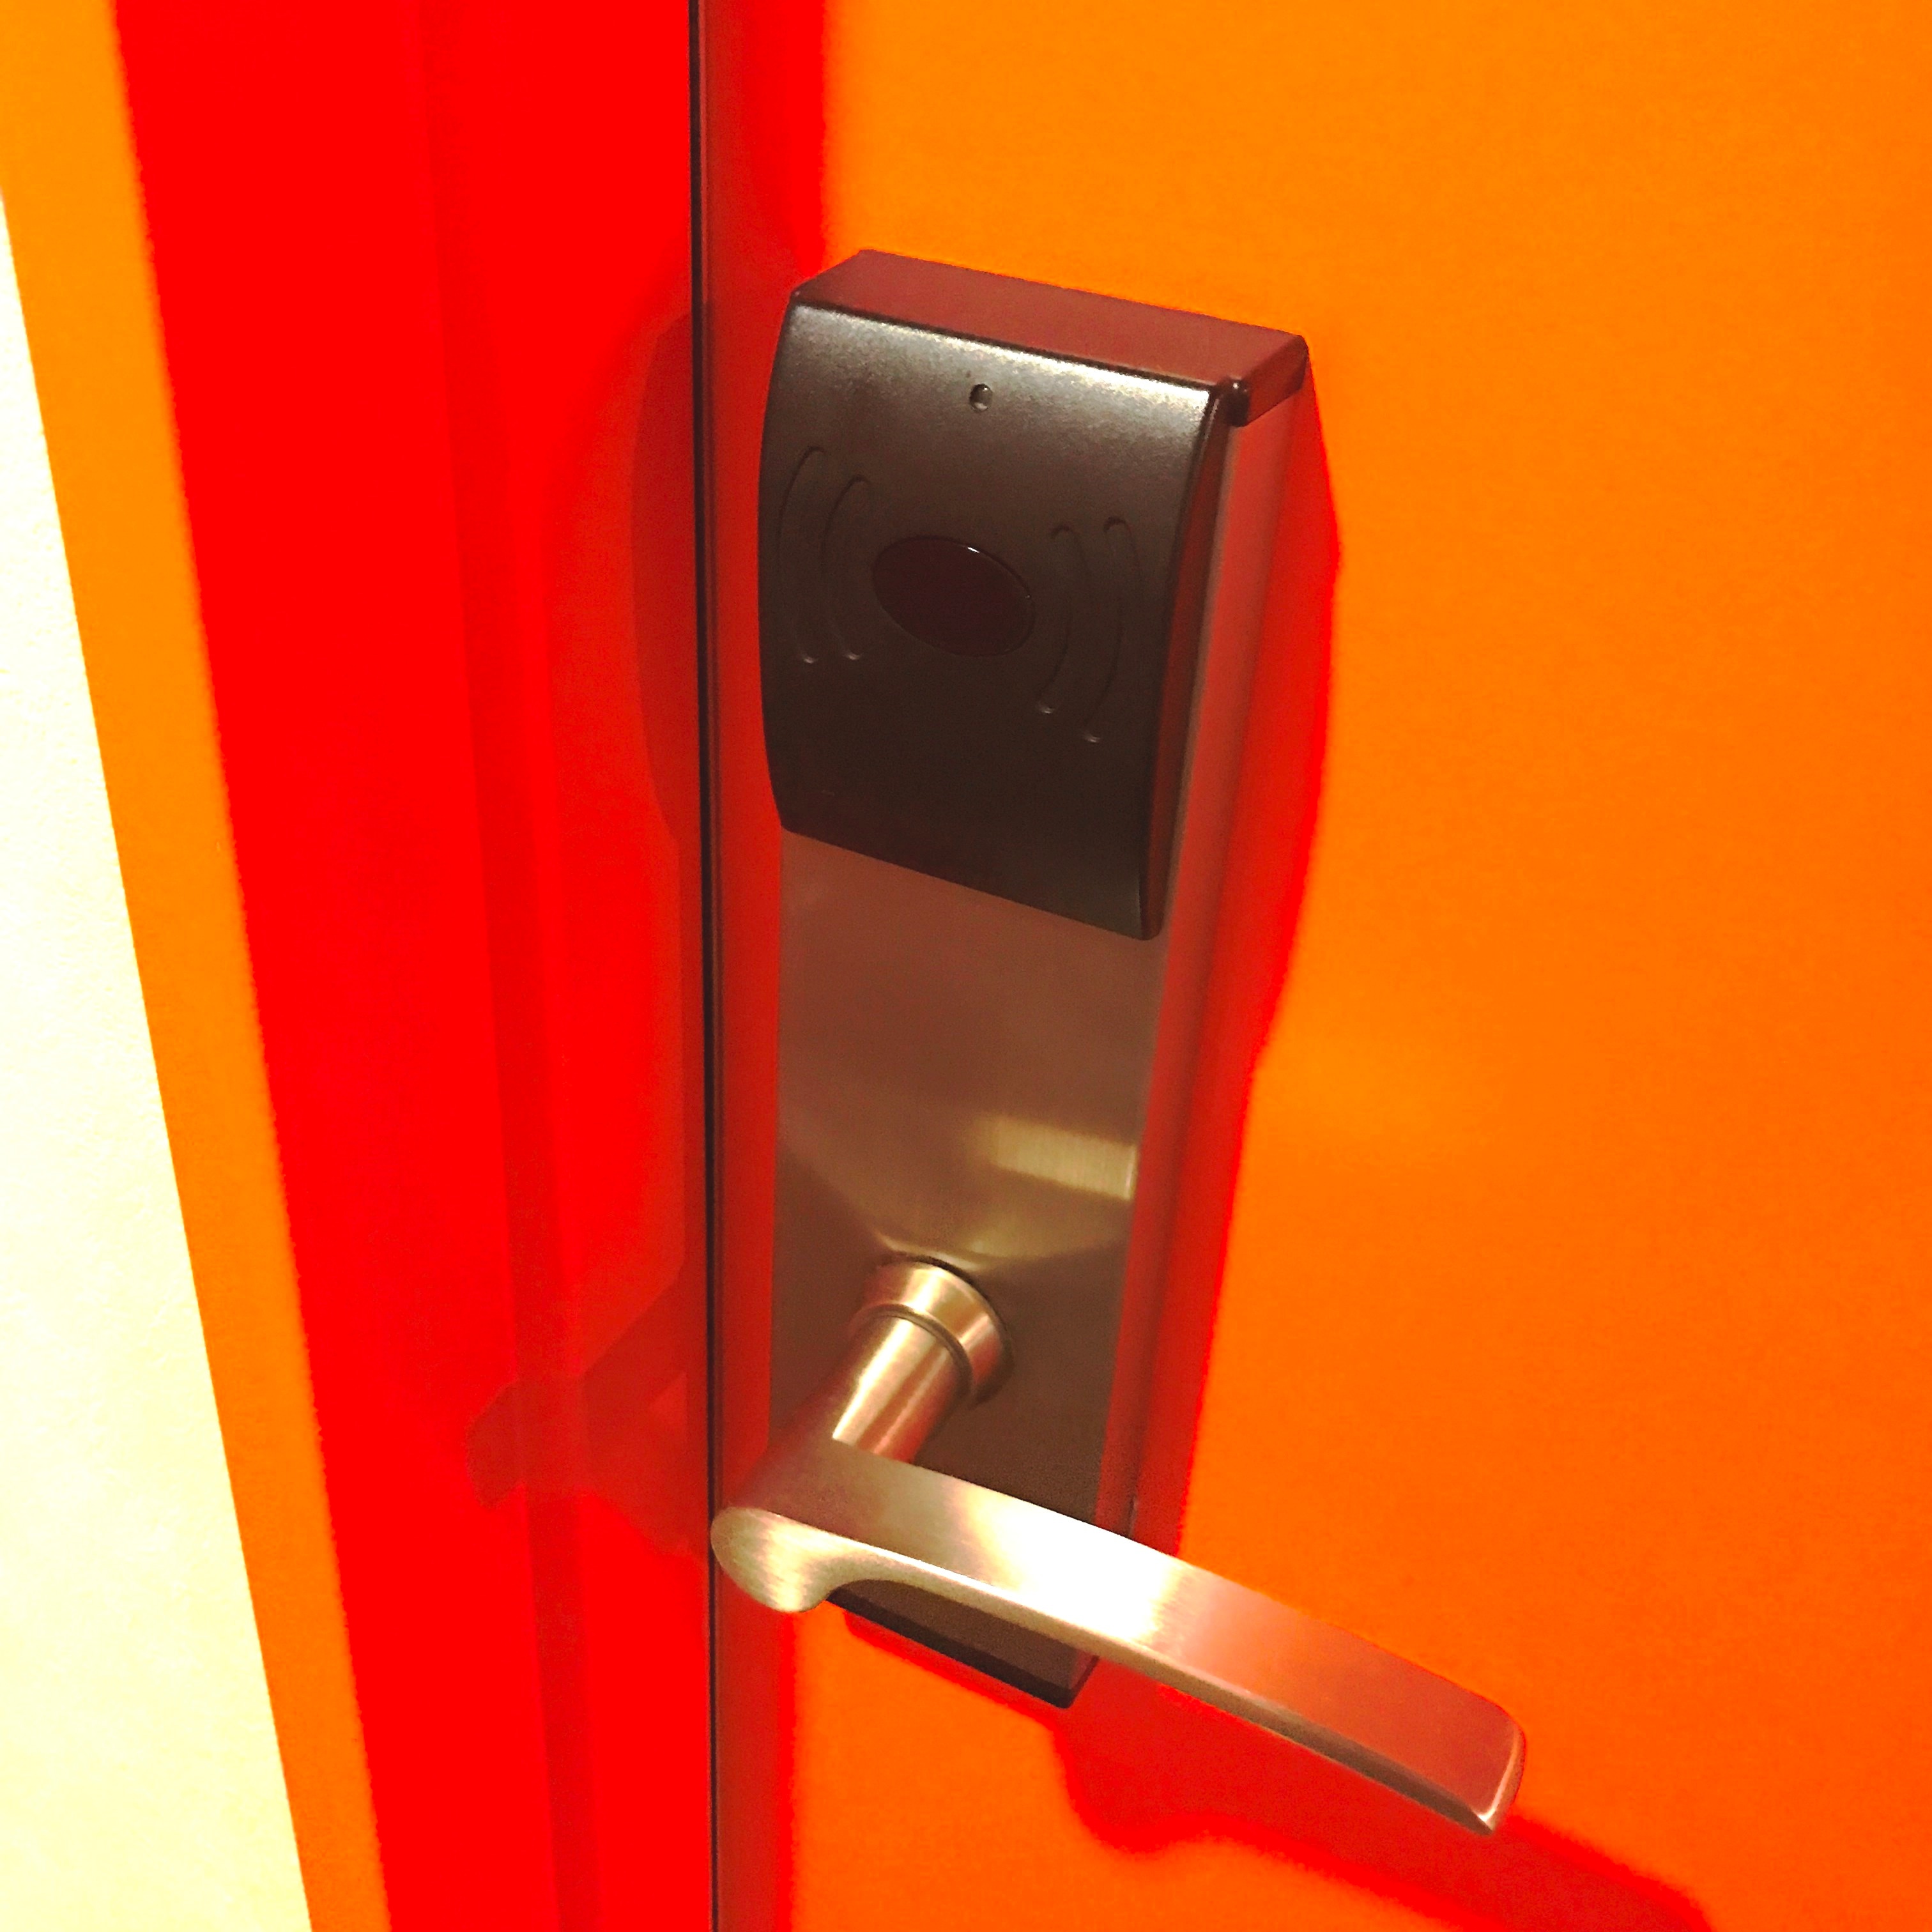 ◆ ประตูห้องพัก ◆ สามารถปลดล็อคล็อคได้โดยถือกุญแจห้องแขกเหนือมัน มันเป็นล็อคอัตโนมัติ